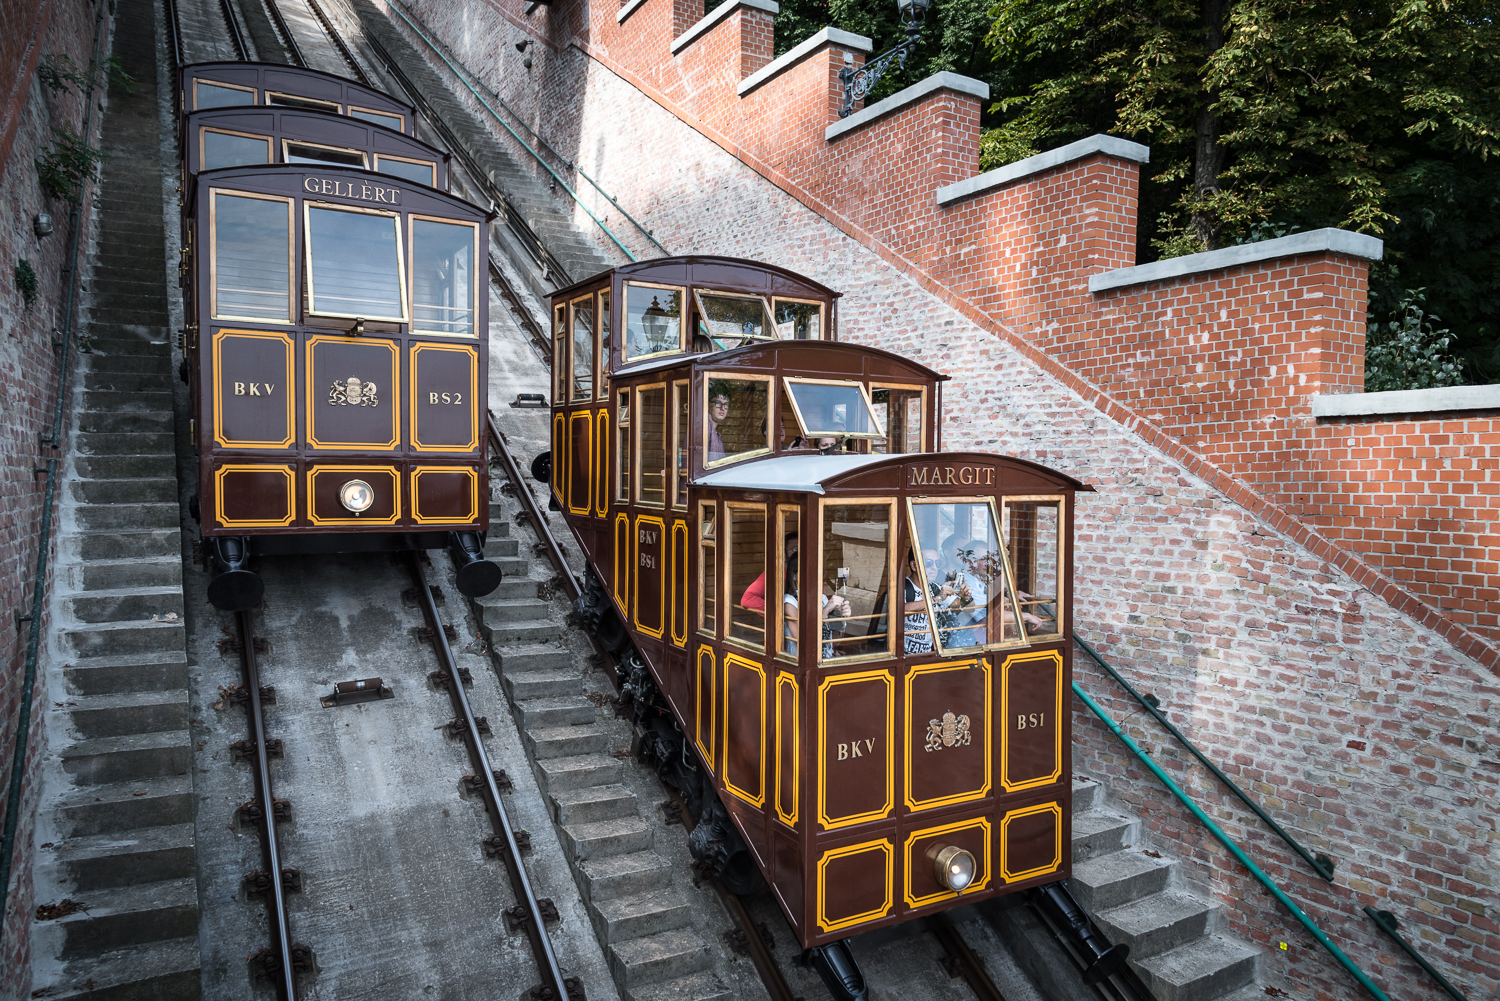 Több mint 150 éve szállítja az utasokat fel a Várba és onnan le Budapest legkülönlegesebb vasútja, a sikló